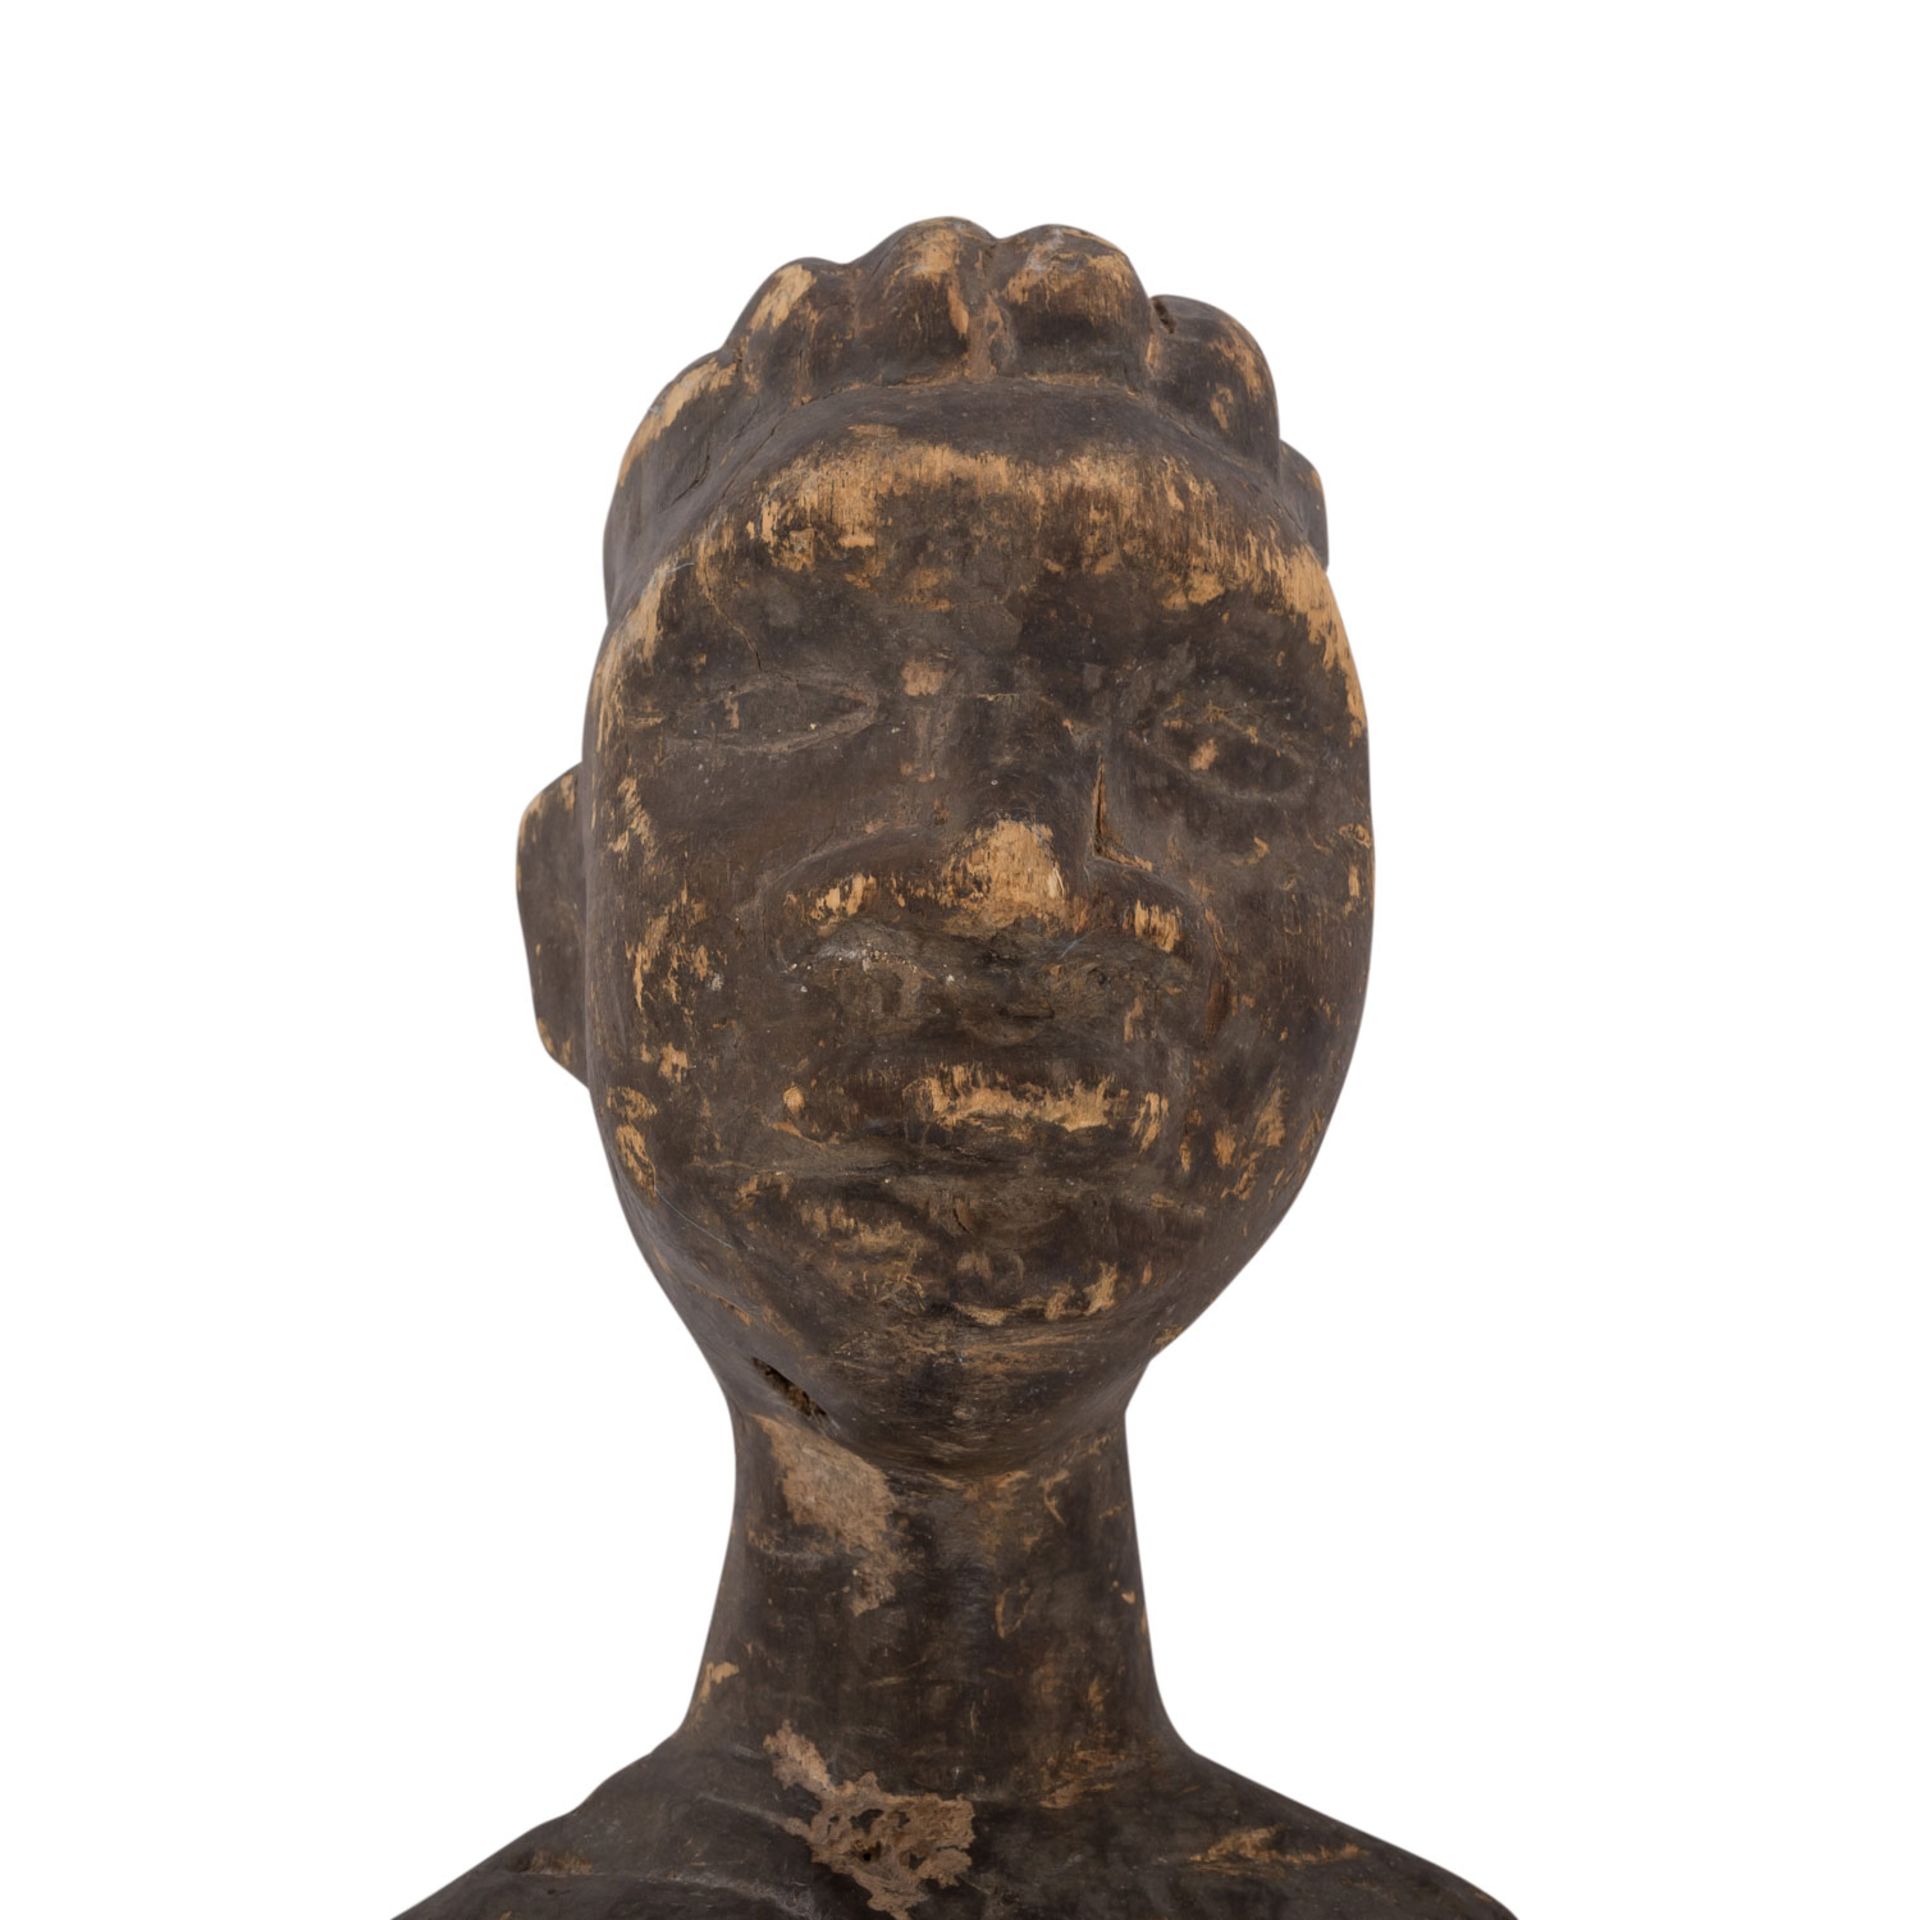 GESCHNITZTE WEIBLICHE FIGURWestafrika, weibliche Standfigur aus Holz, fein und detailreich - Bild 3 aus 3